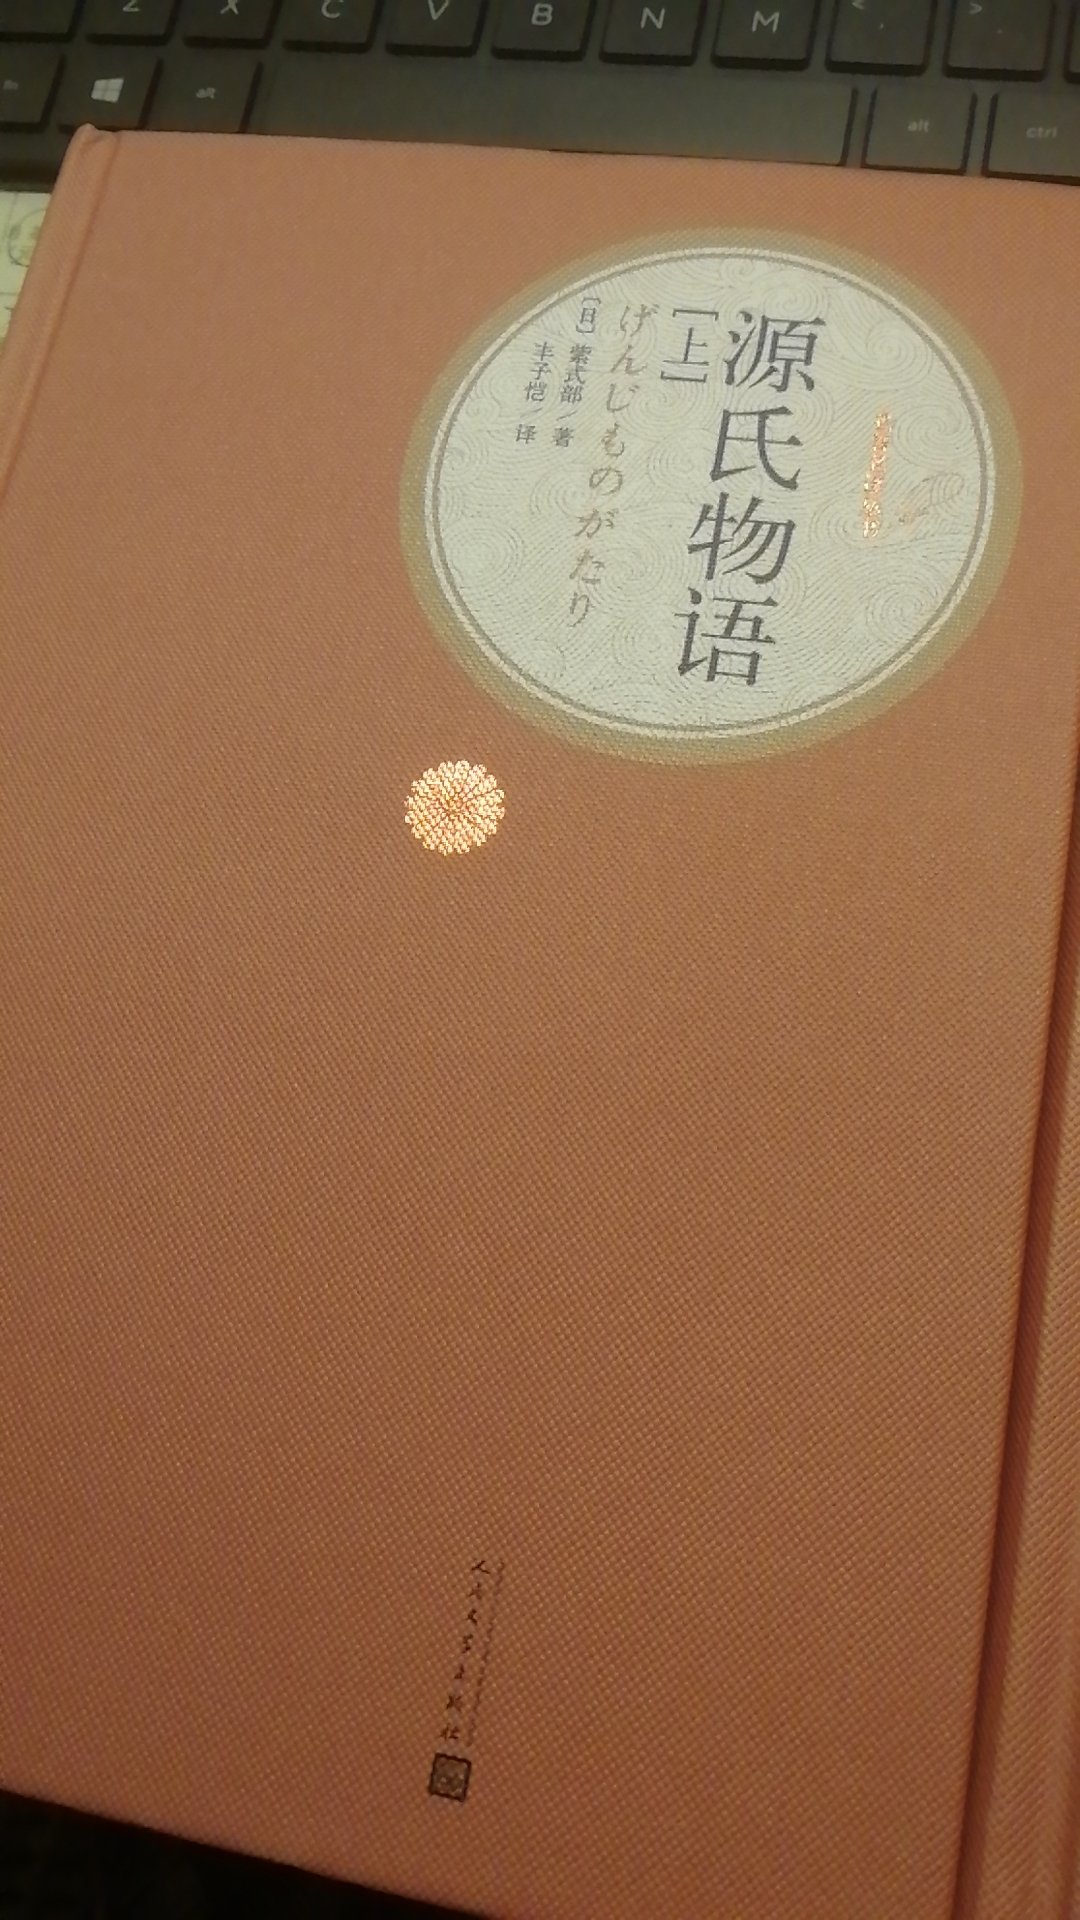 上下两册，书很厚重，很耐读的一本书，值得收藏，感触日本“红楼梦”...